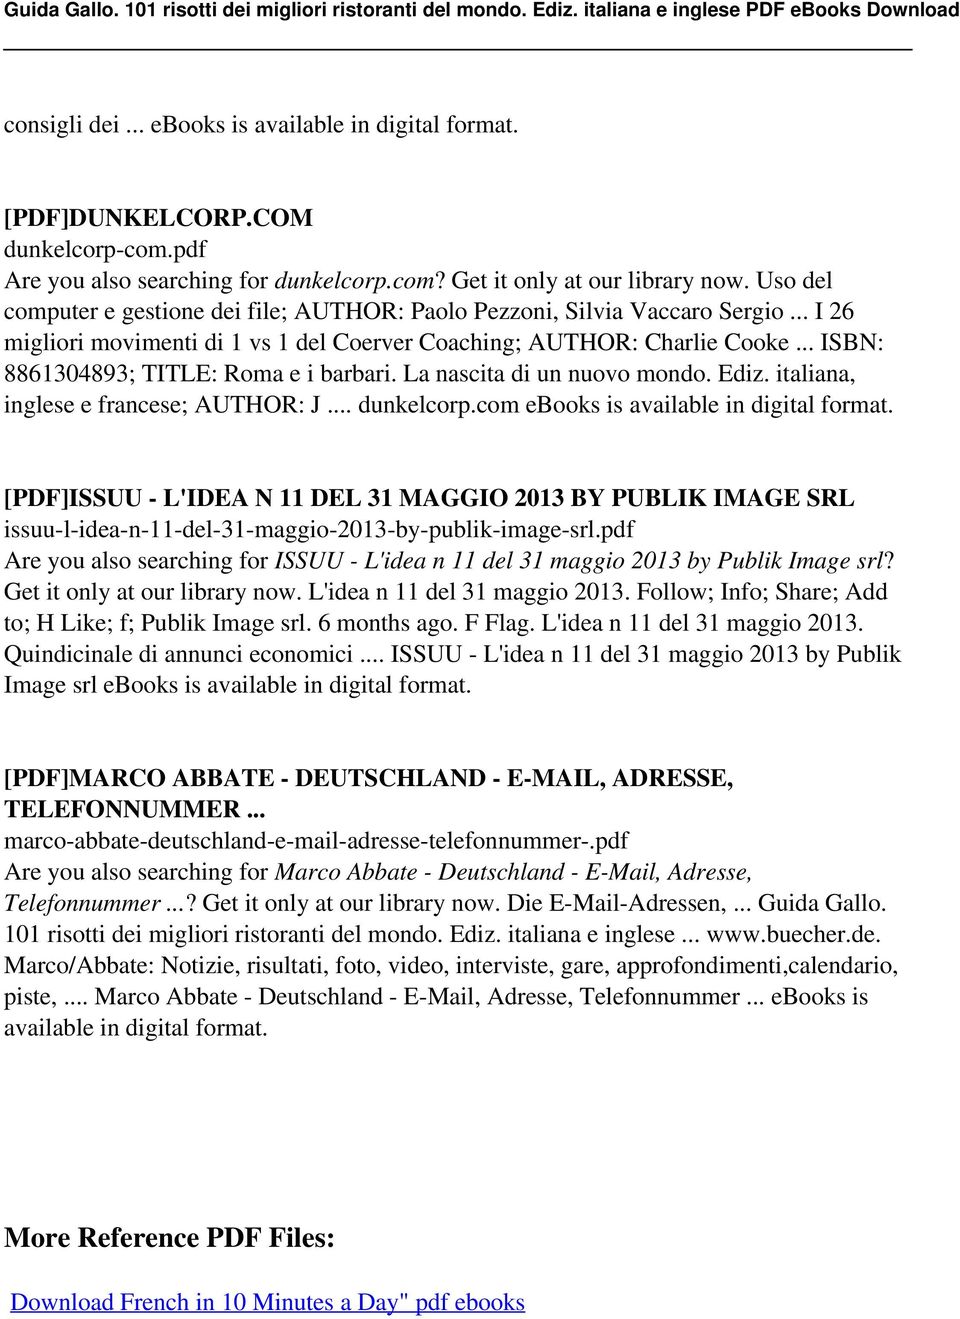 .. ISBN: 8861304893; TITLE: Roma e i barbari. La nascita di un nuovo mondo. Ediz. italiana, inglese e francese; AUTHOR: J... dunkelcorp.com ebooks is available in digital format.